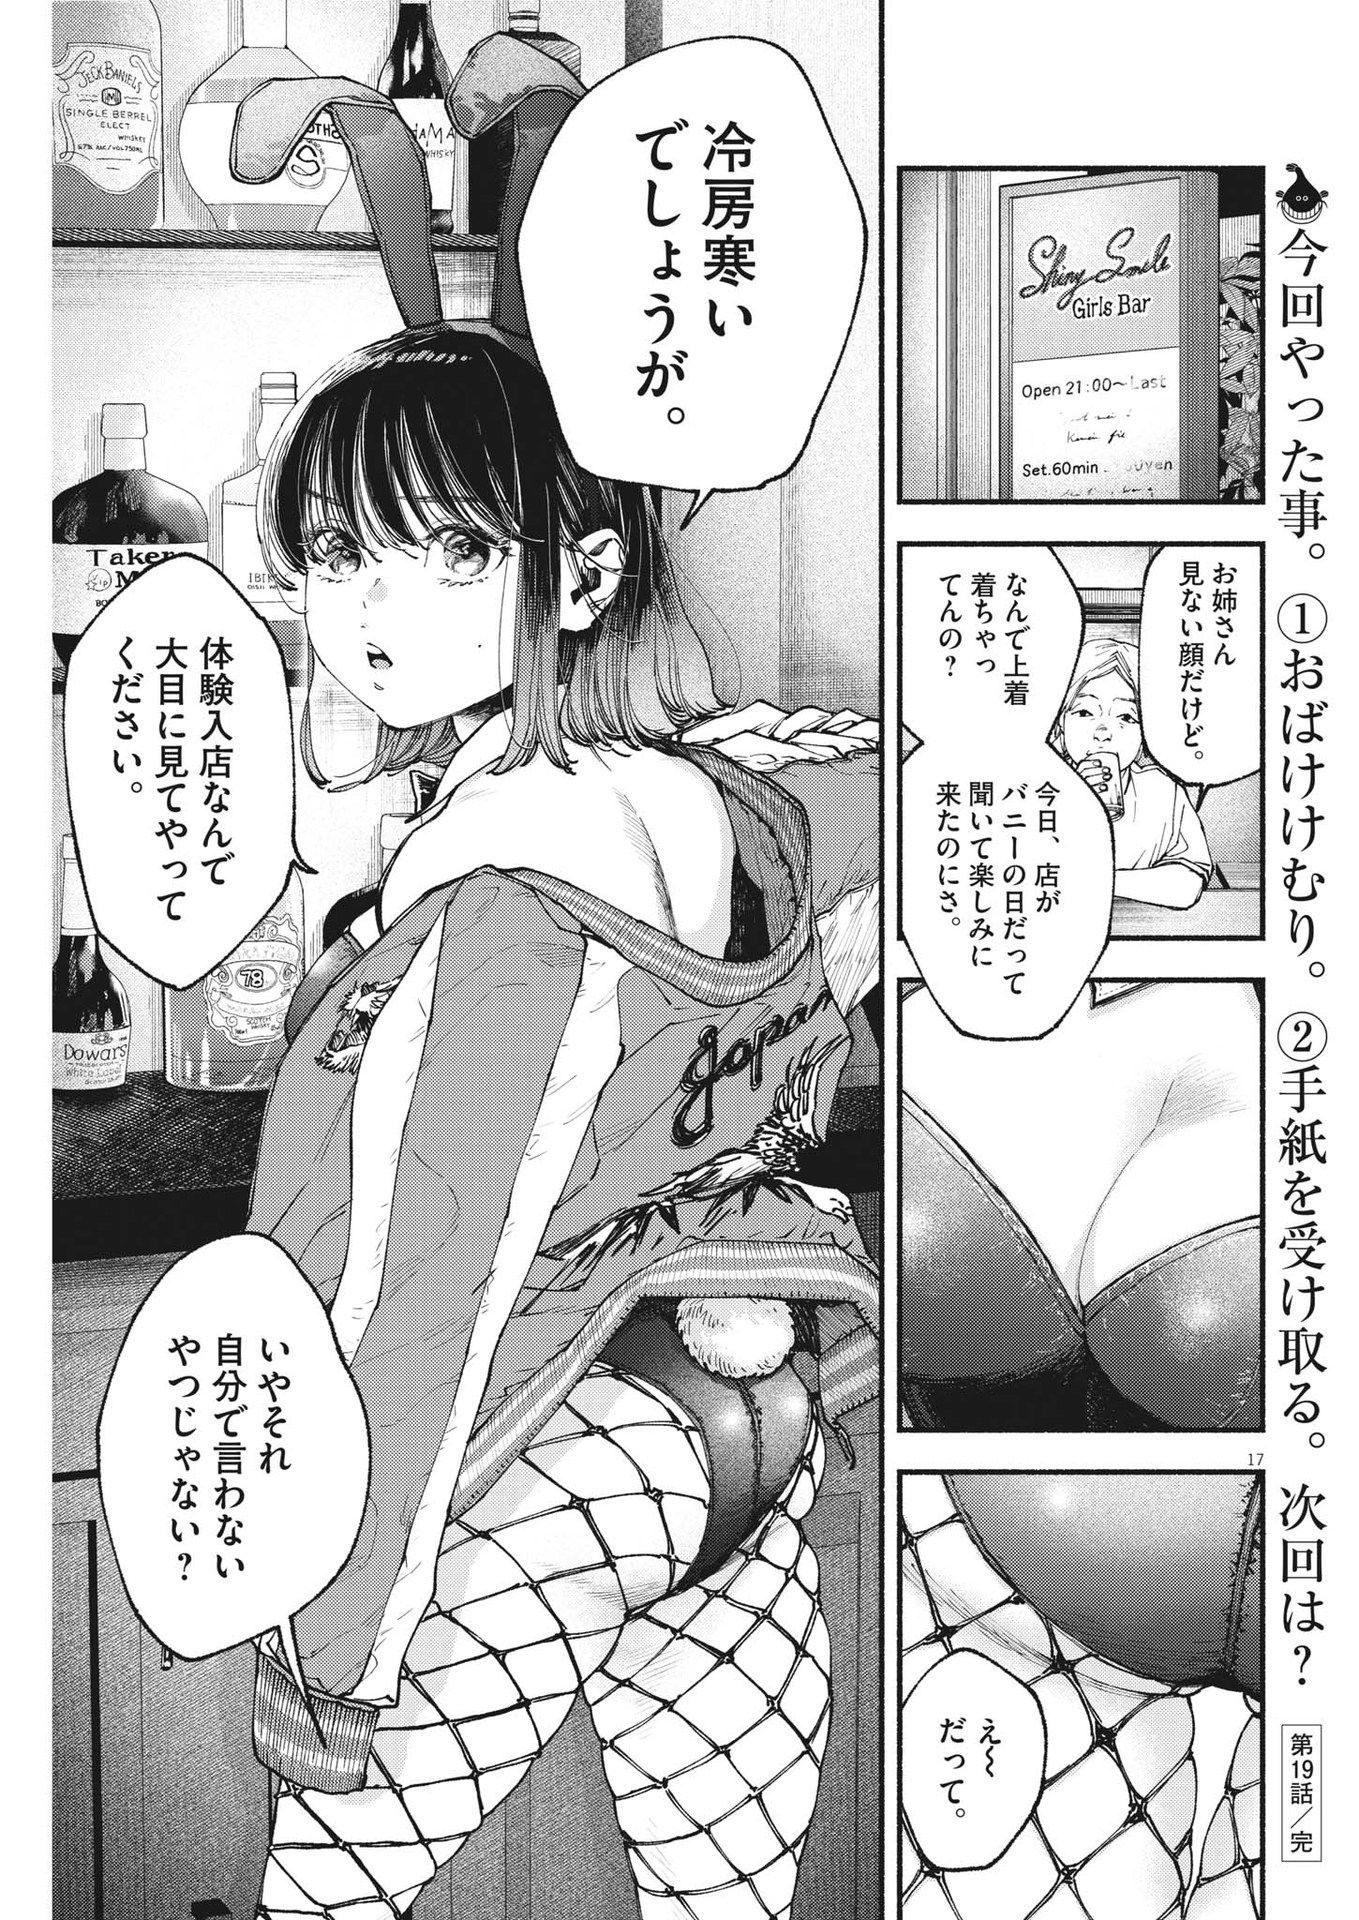 Konoyo wa Tatakau Kachi ga Aru  - Chapter 19 - Page 17